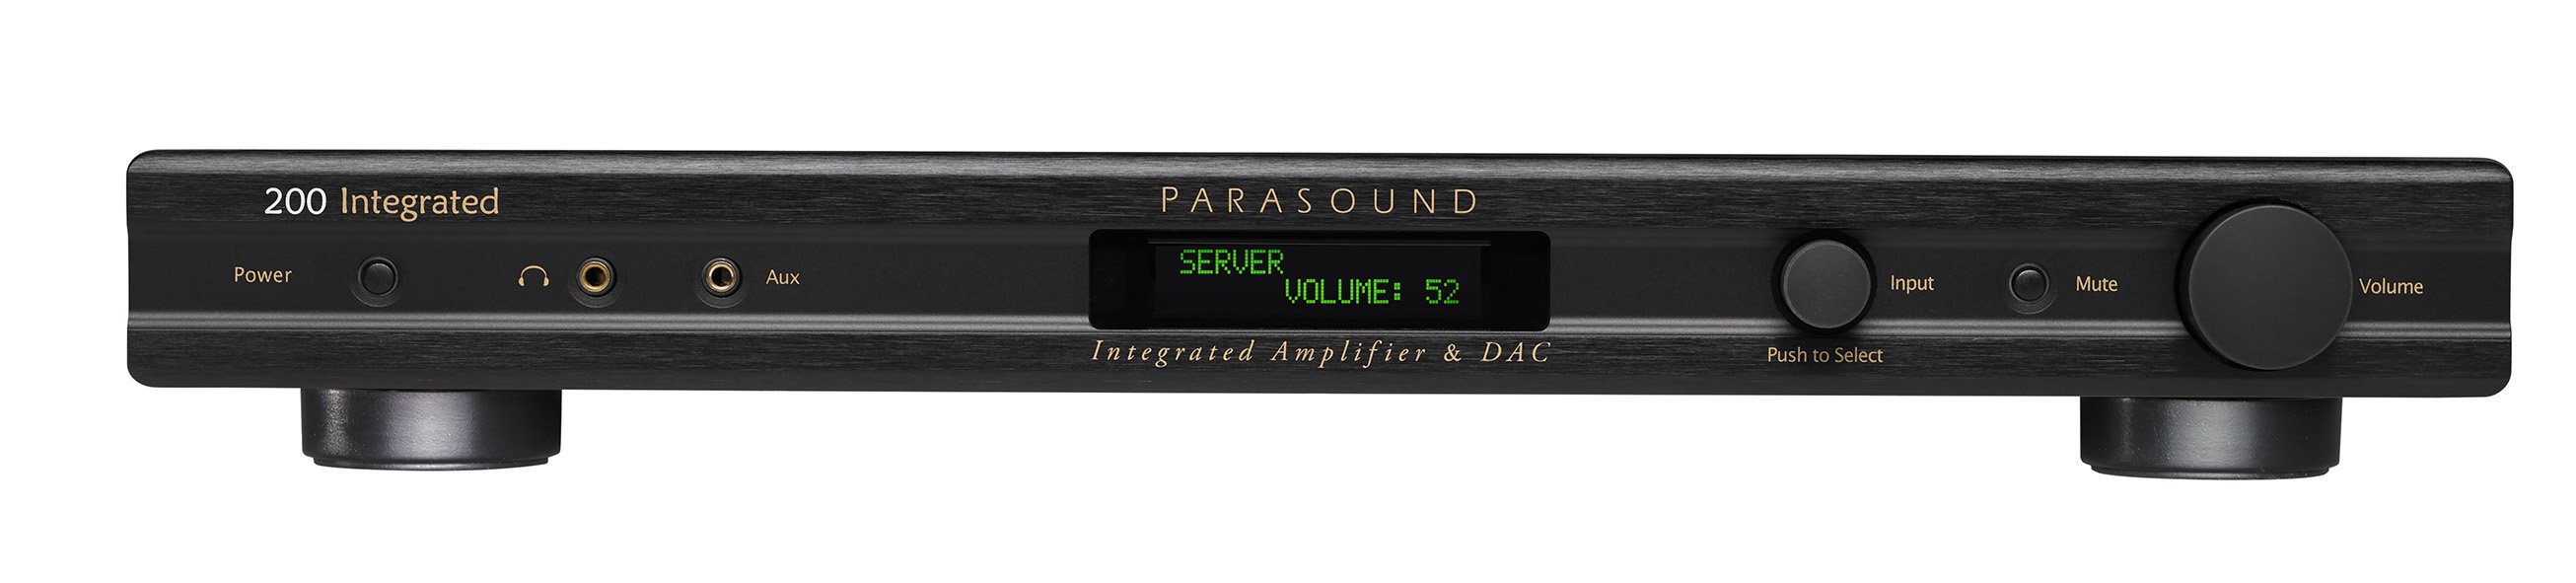 Стереоусилитель Parasound 200 Integrated